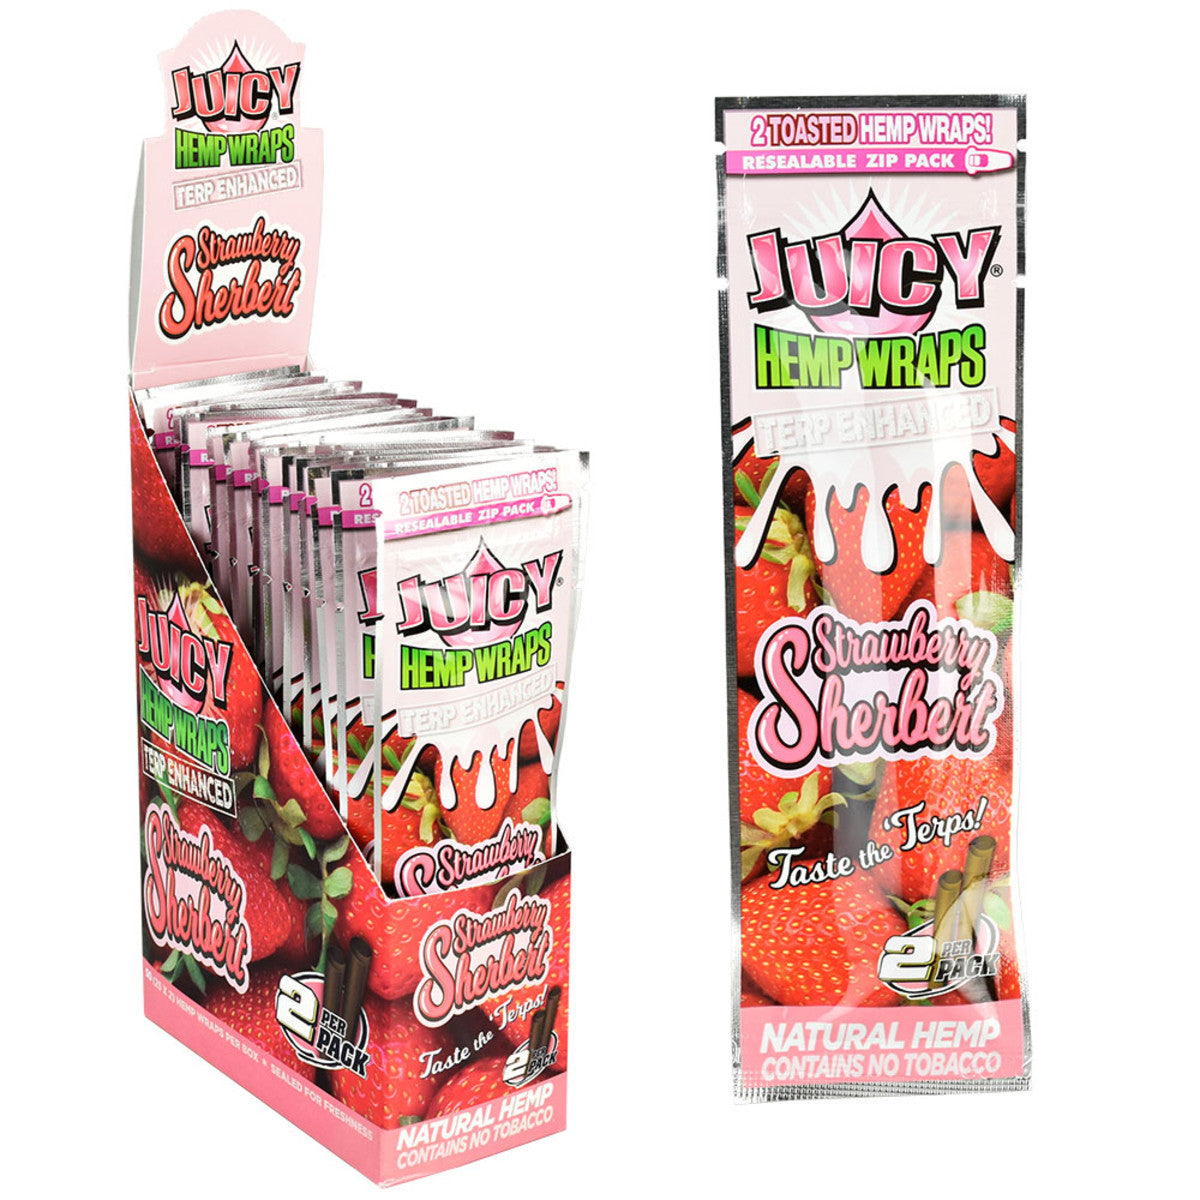 juicy terp enhanced hemp wraps strawberry sherbert box